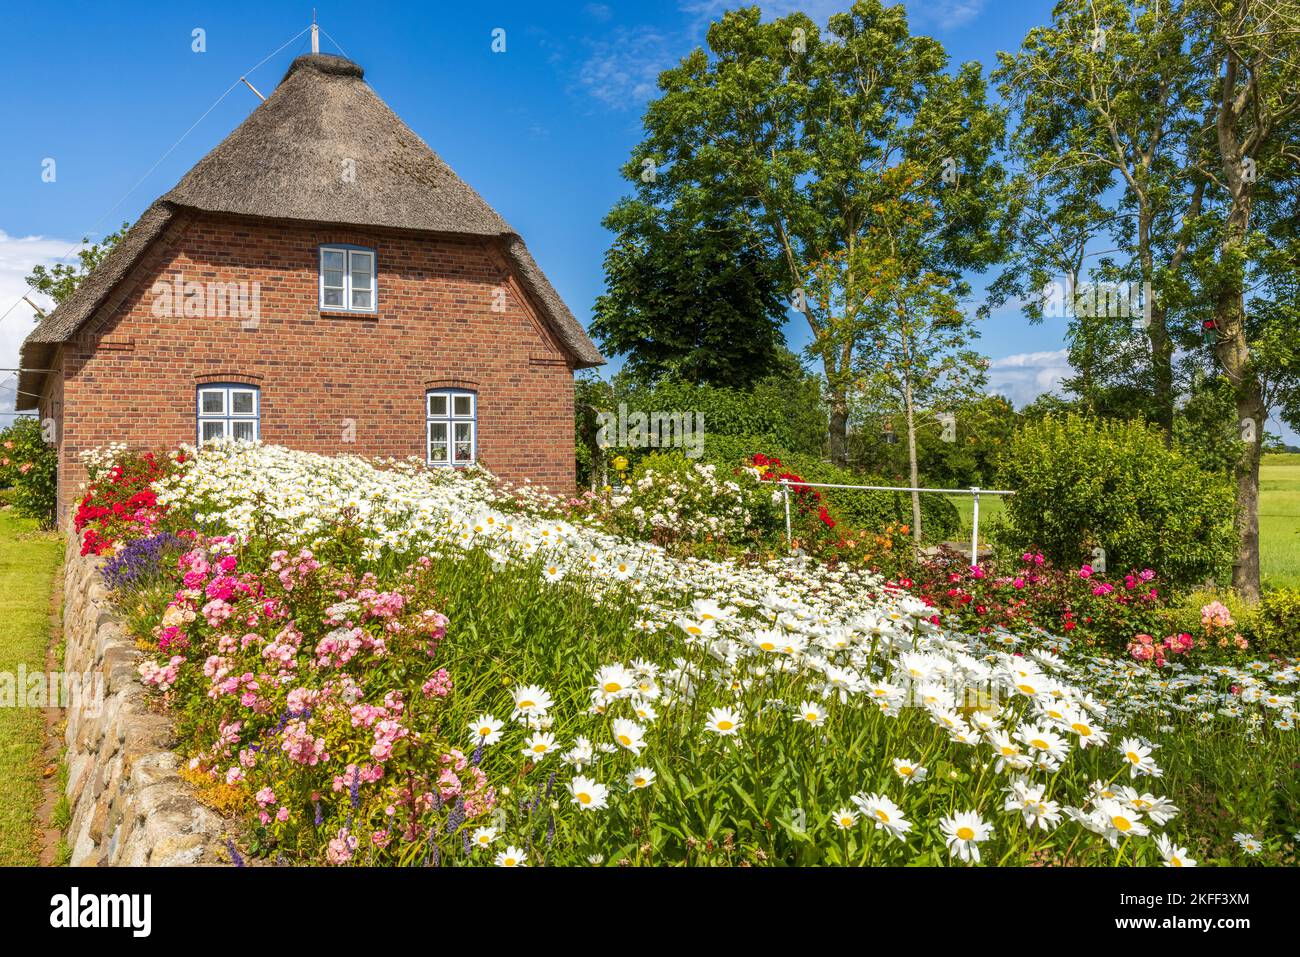 Friesenhaus mit Blumengarten en Angleterre, Insel Nordstrand, Nordfriesland, Schleswig-Holstein, Allemagne Banque D'Images